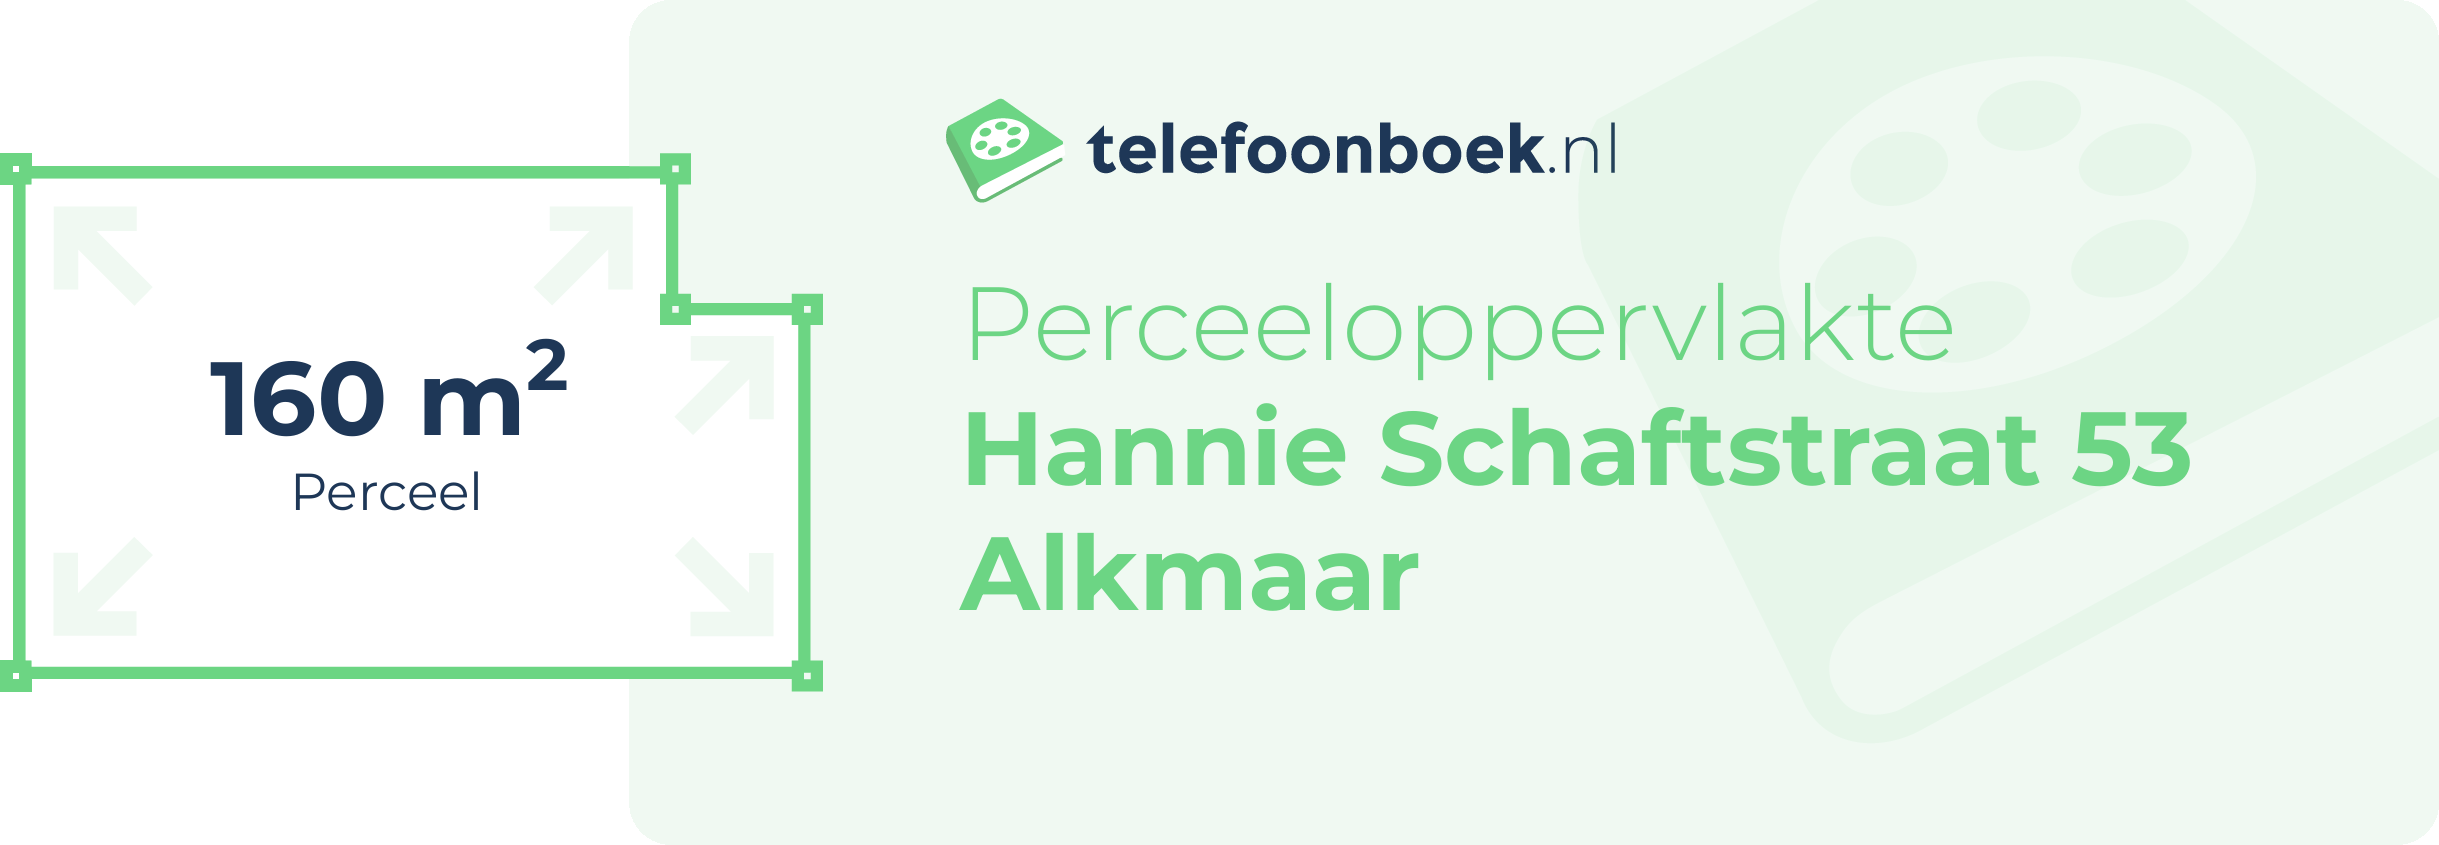 Perceeloppervlakte Hannie Schaftstraat 53 Alkmaar